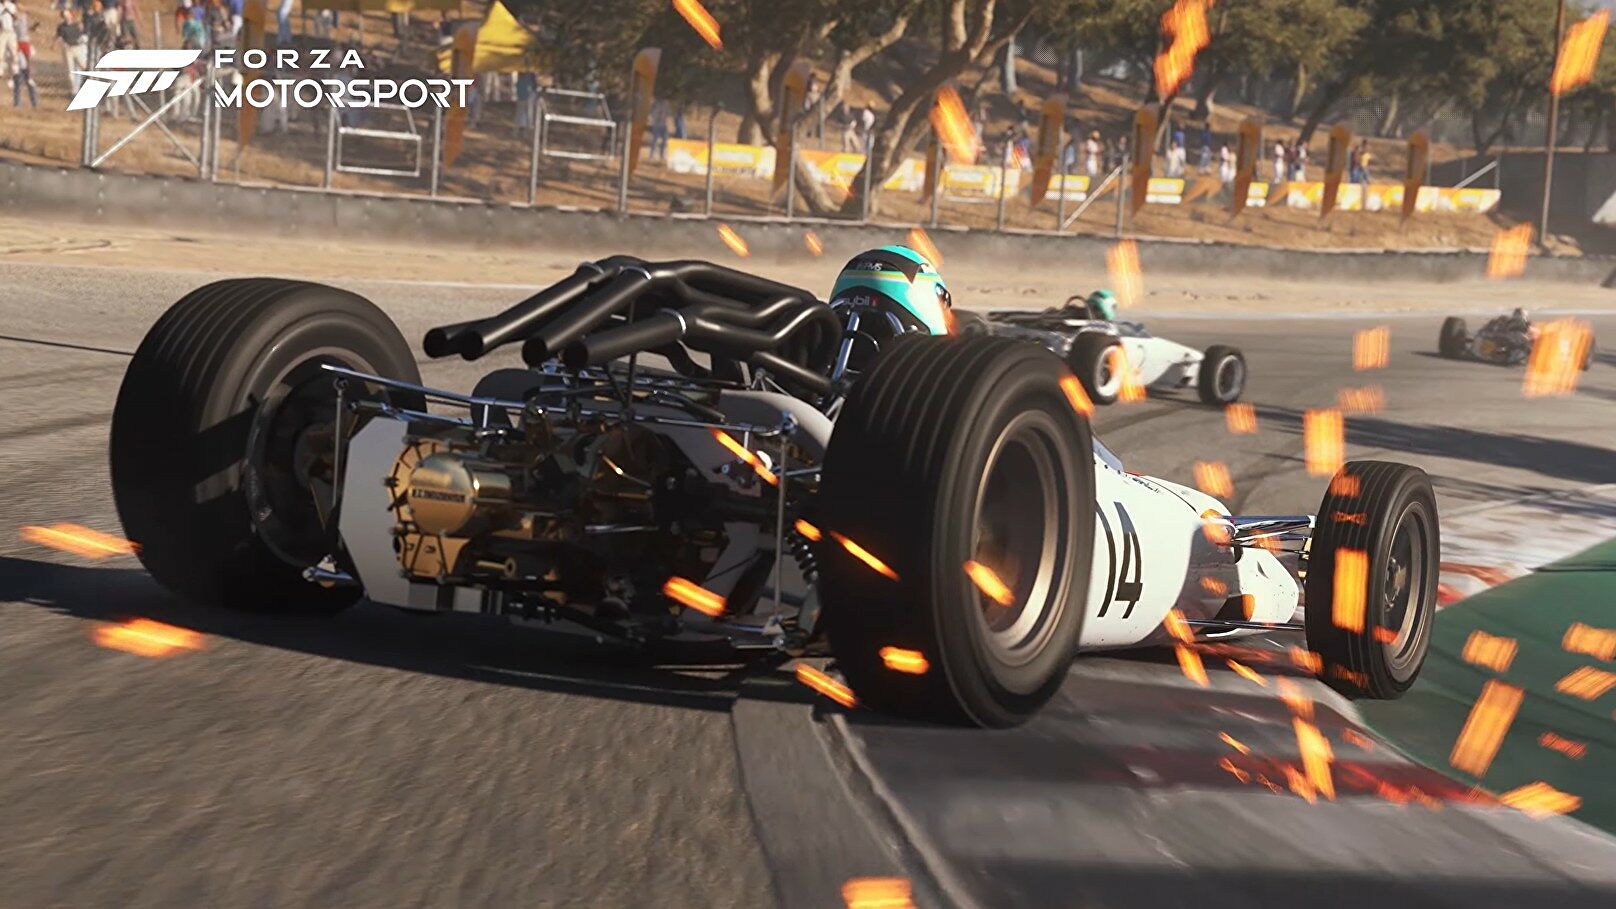 Afbeeldingen van Forza Motorsport aangekondigd